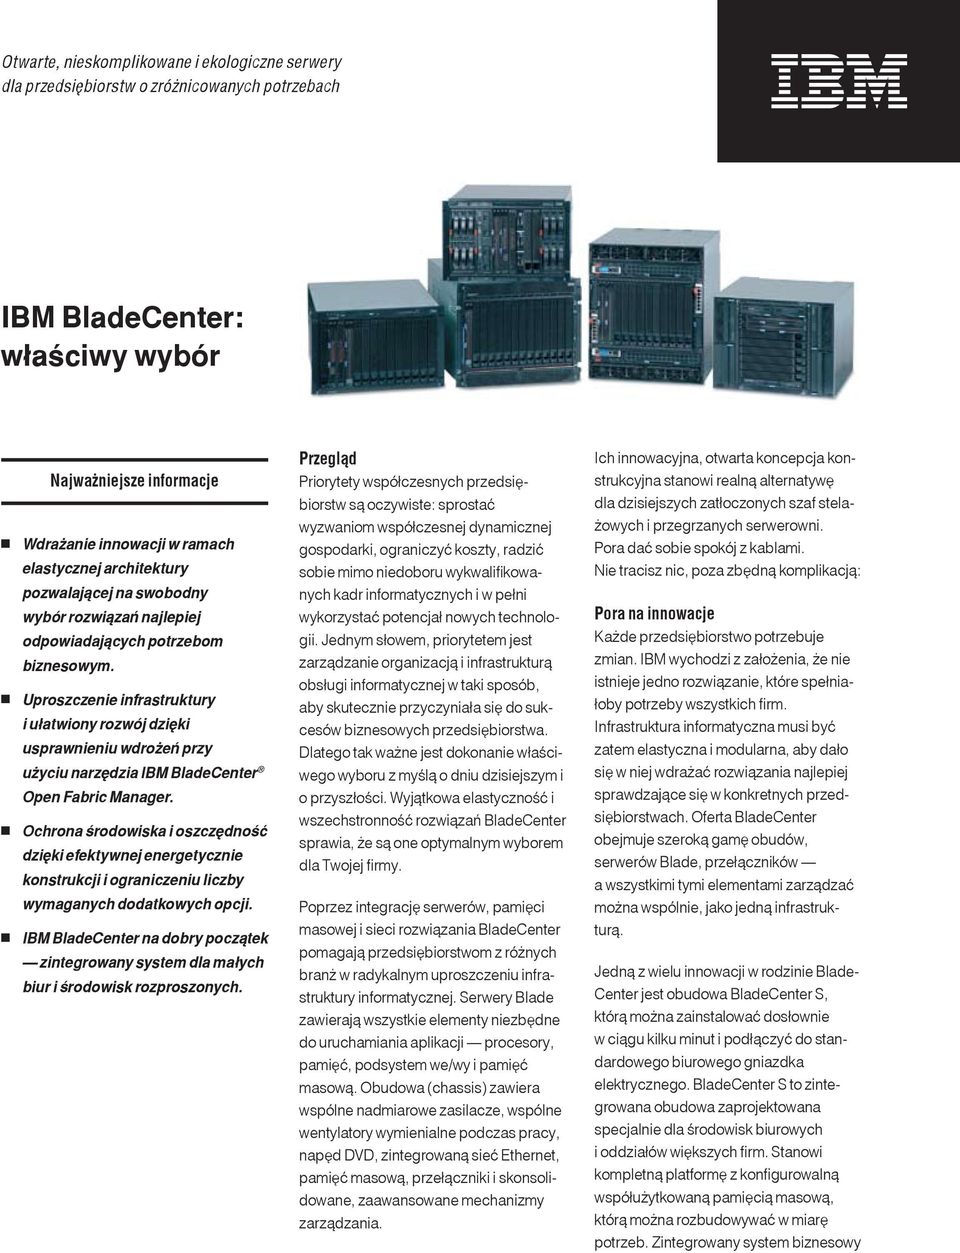 Uproszczenie infrastruktury i ułatwiony rozwój dzięki usprawnieniu wdrożeń przy użyciu narzędzia IBM BladeCenter Open Fabric Manager.